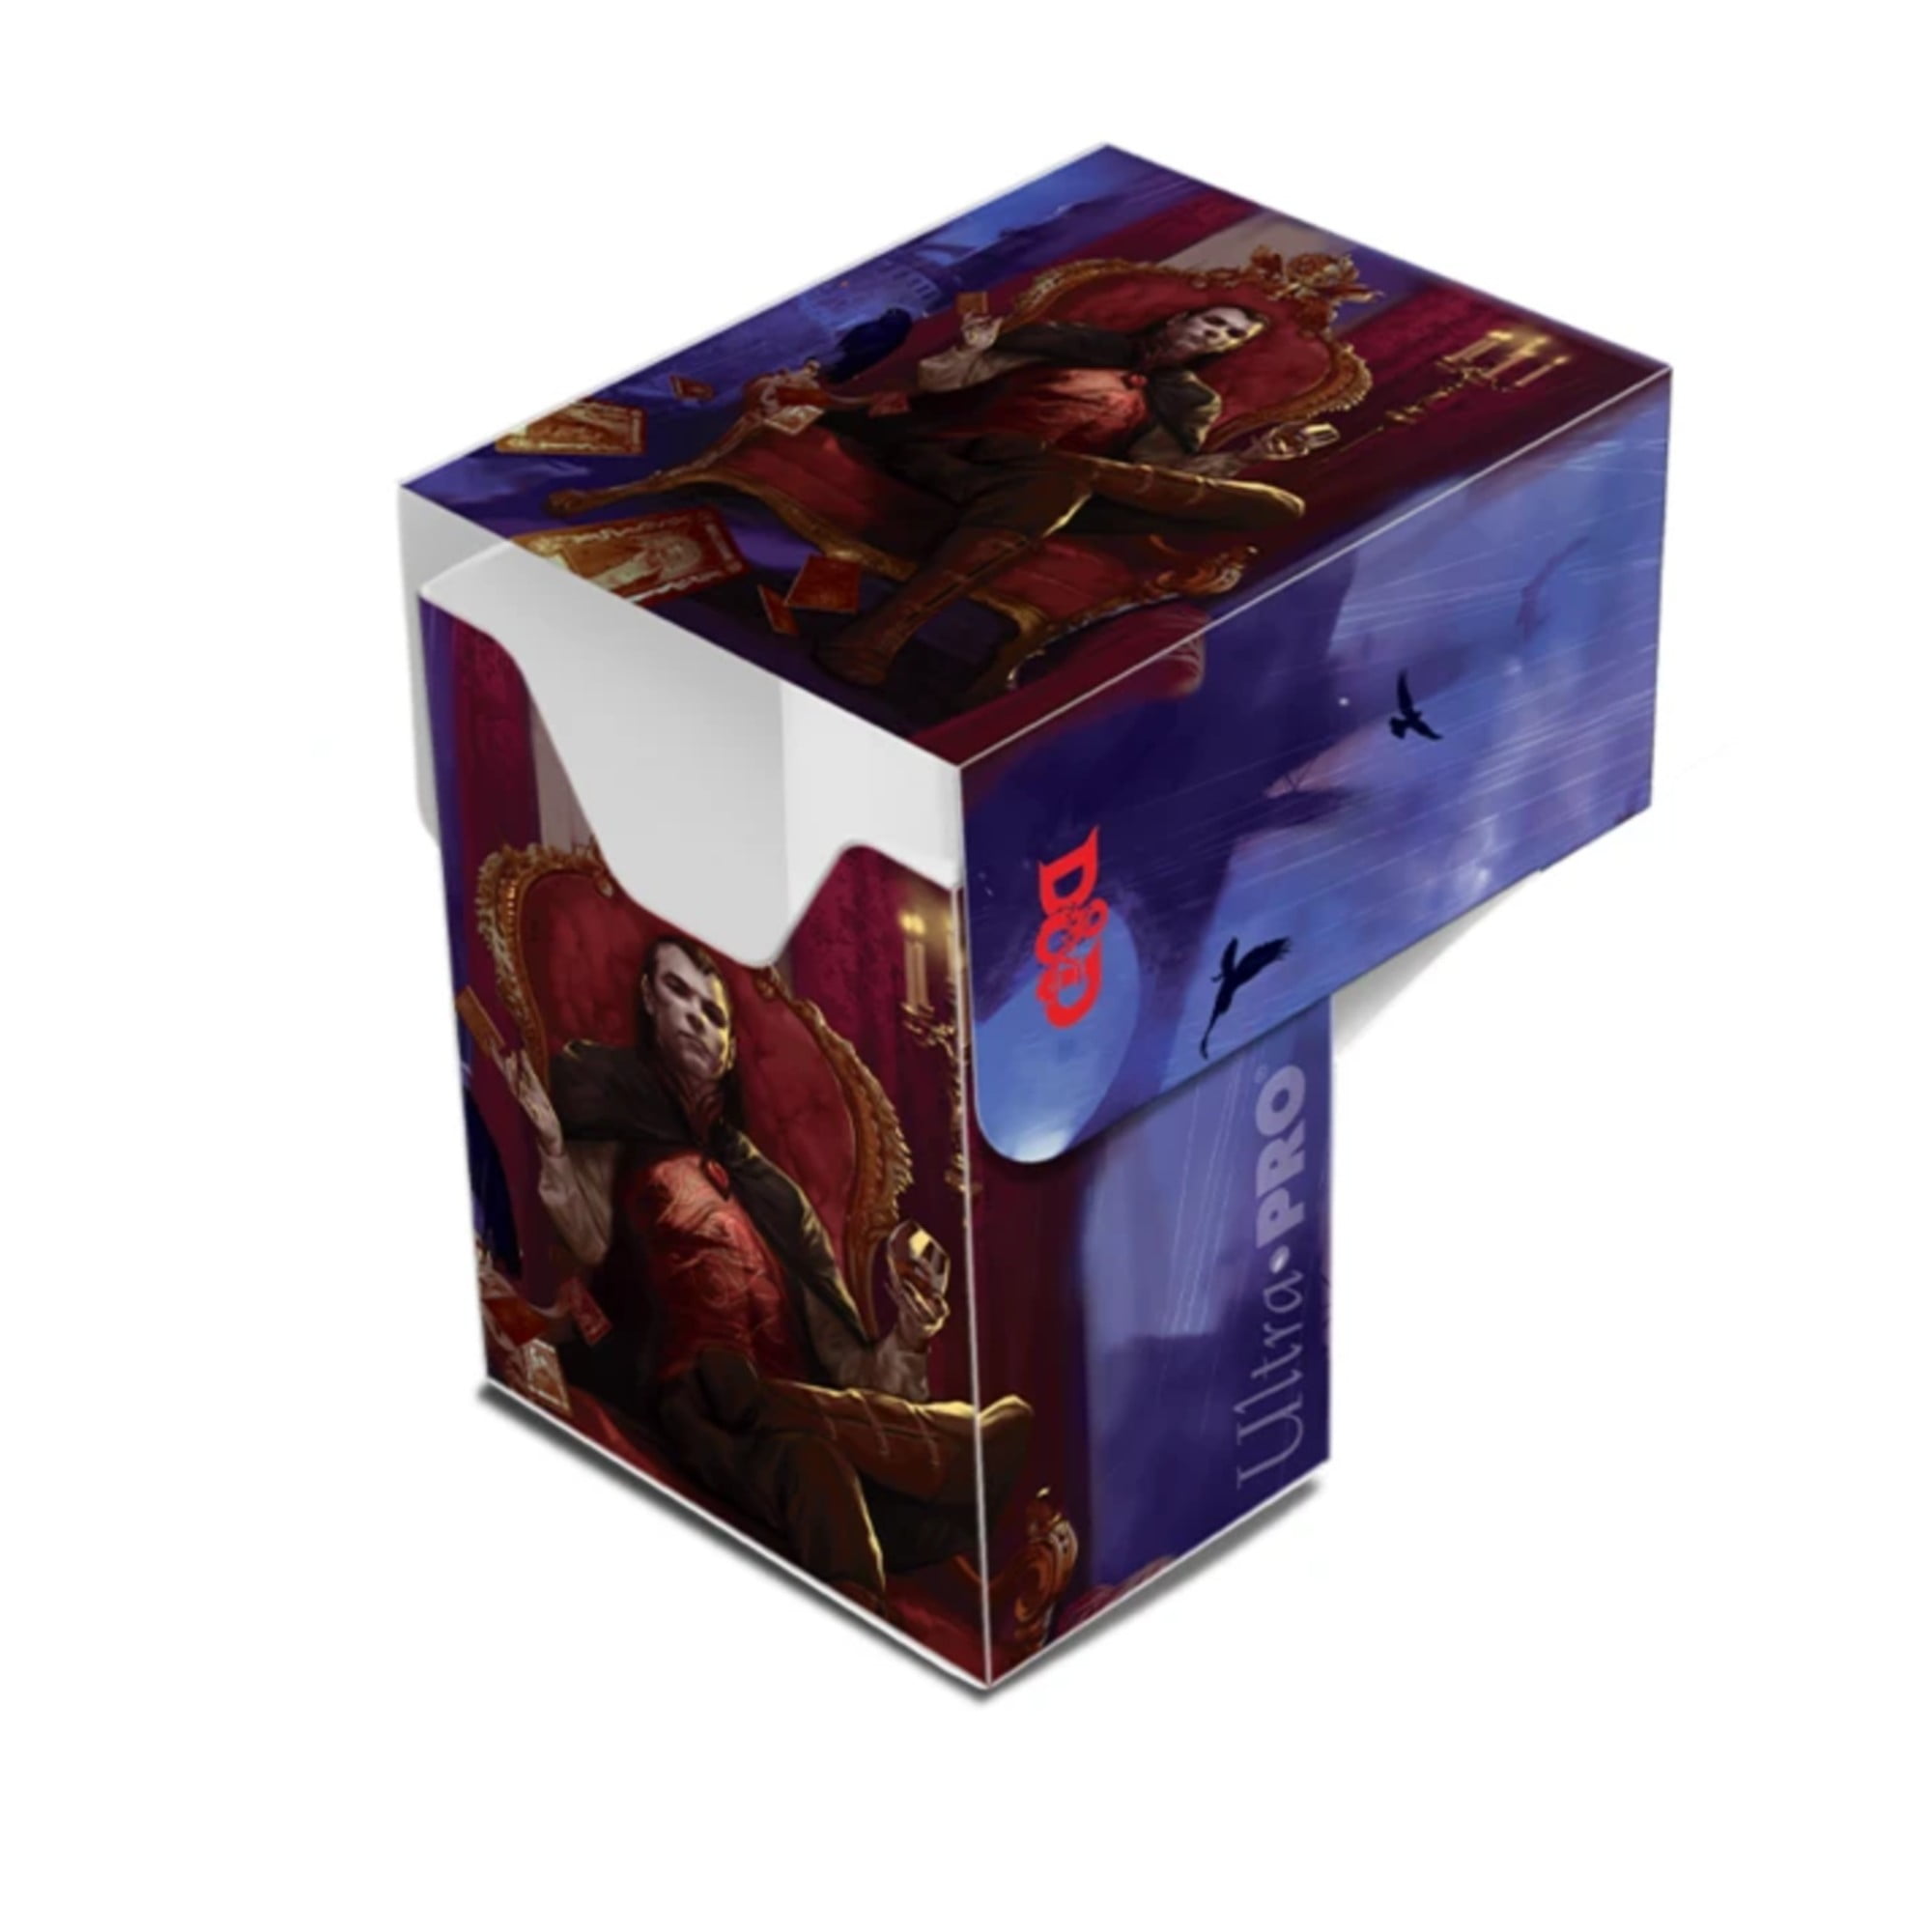 Dungeons & Dragons - Count Strahd von Zarovich Full-View Deck Box